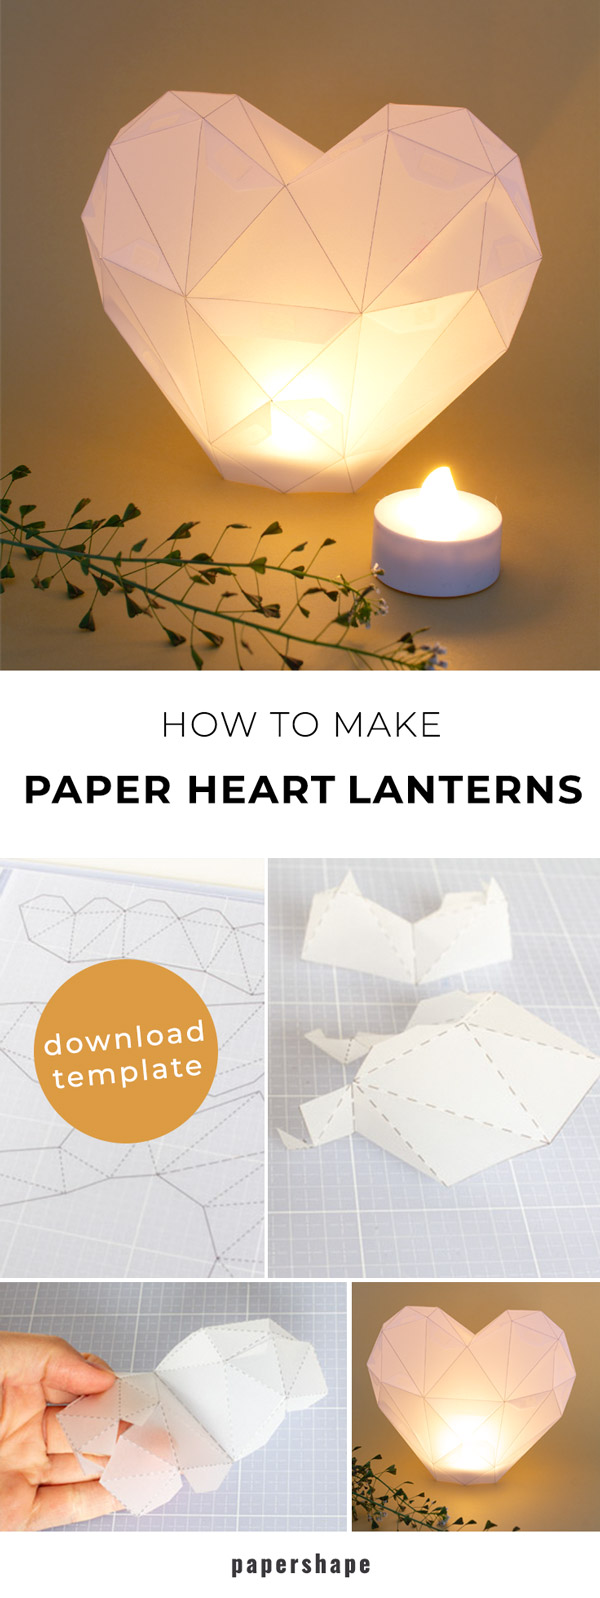 DIY heart lantern as a centerpiece for the wedding table #papercraft #weddinglantern #diy  